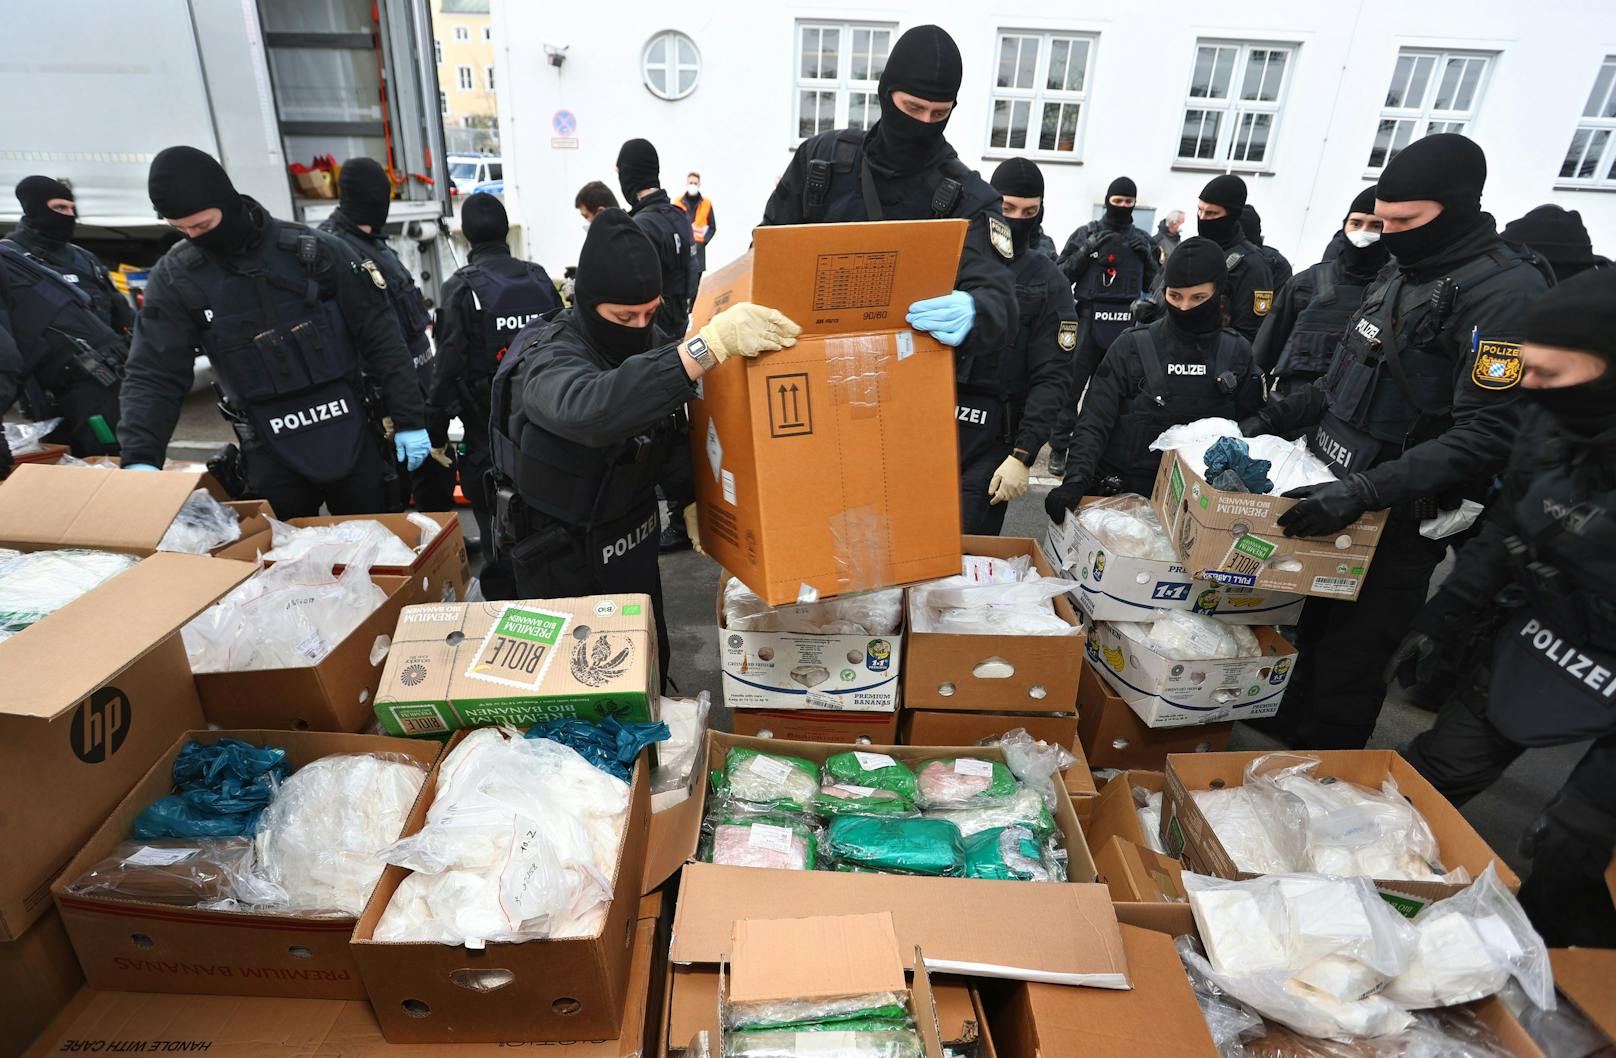 Die deutsche Polizei hat über 1,5 Tonnen Kokain verbrannt. 